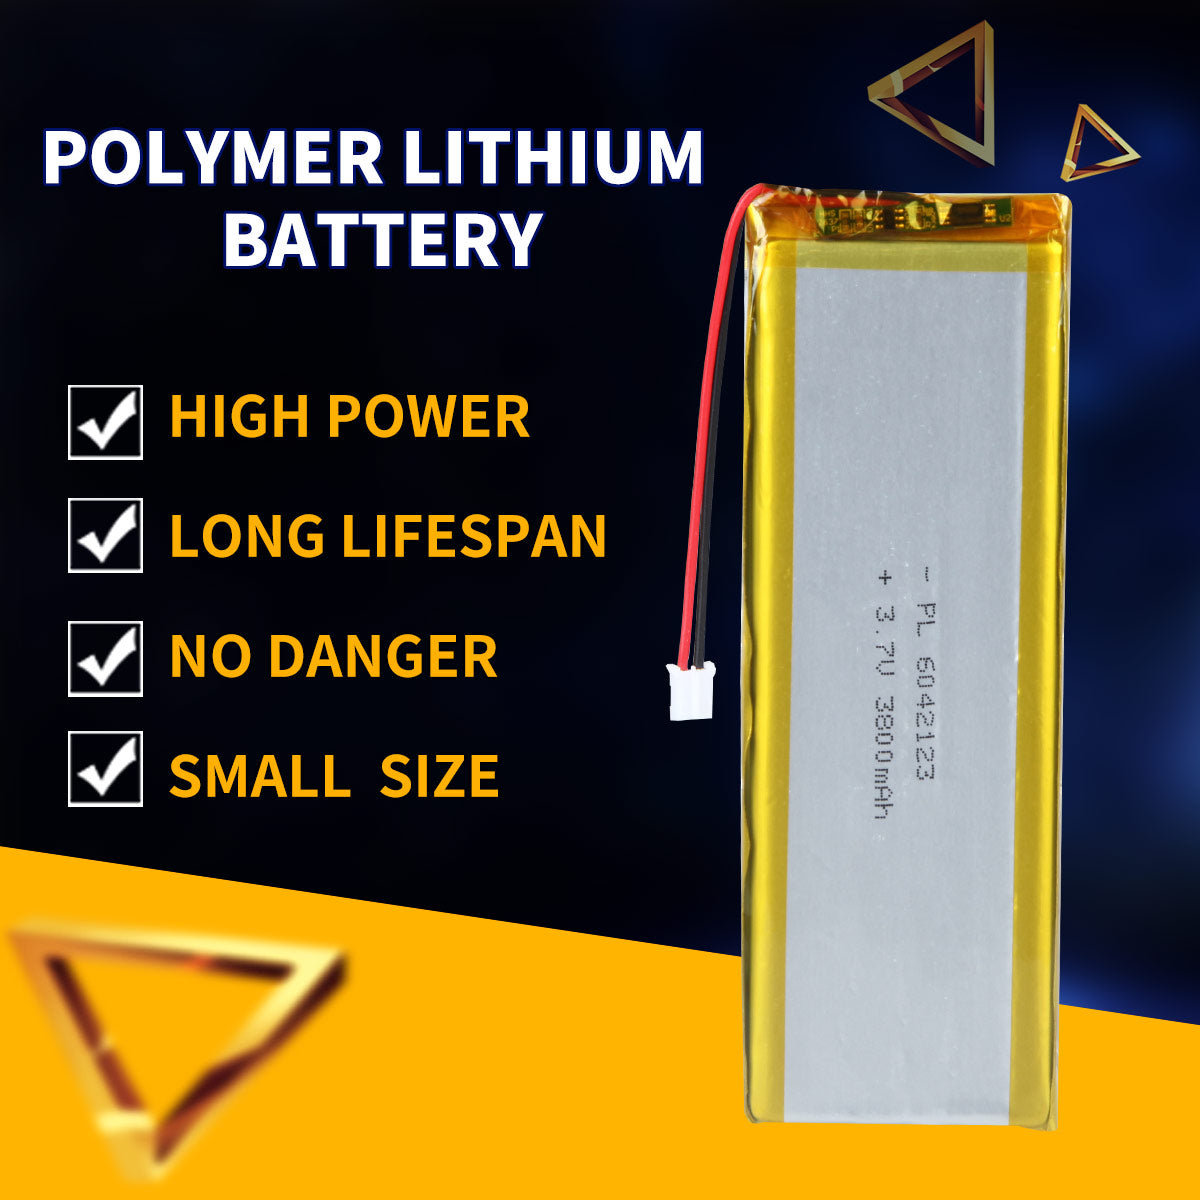 3.7V 3800mAh 6042123 Batterie Lithium Polymère Rechargeable Longueur 125mm